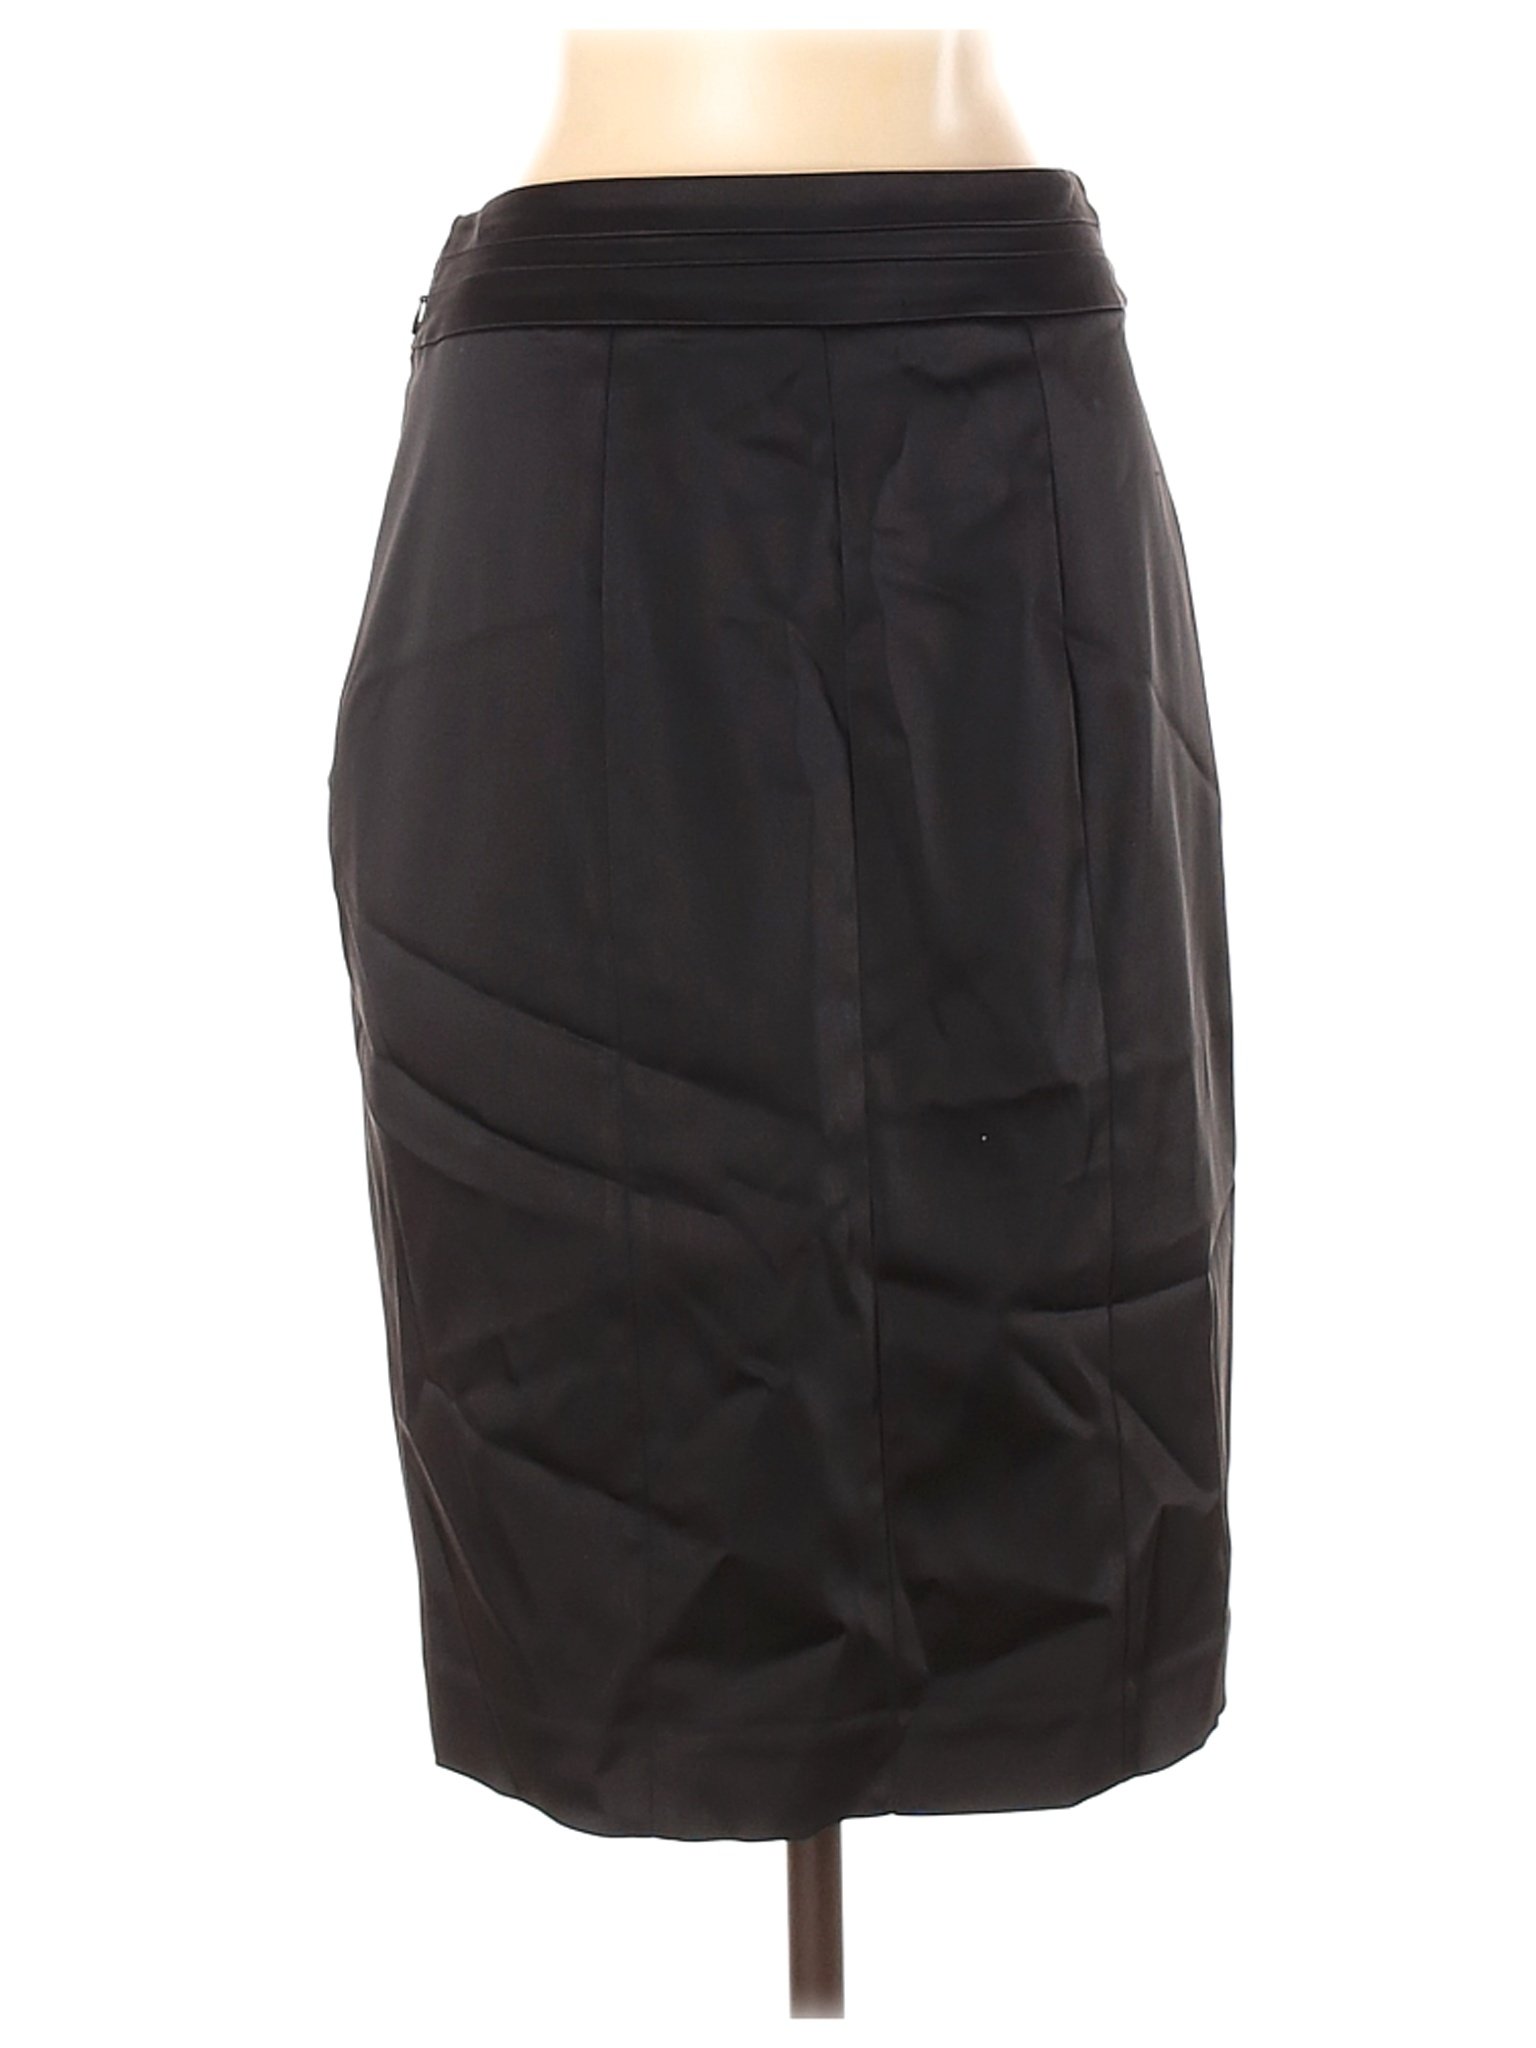 White House Black Market Women Black Casual Skirt 4 | eBay